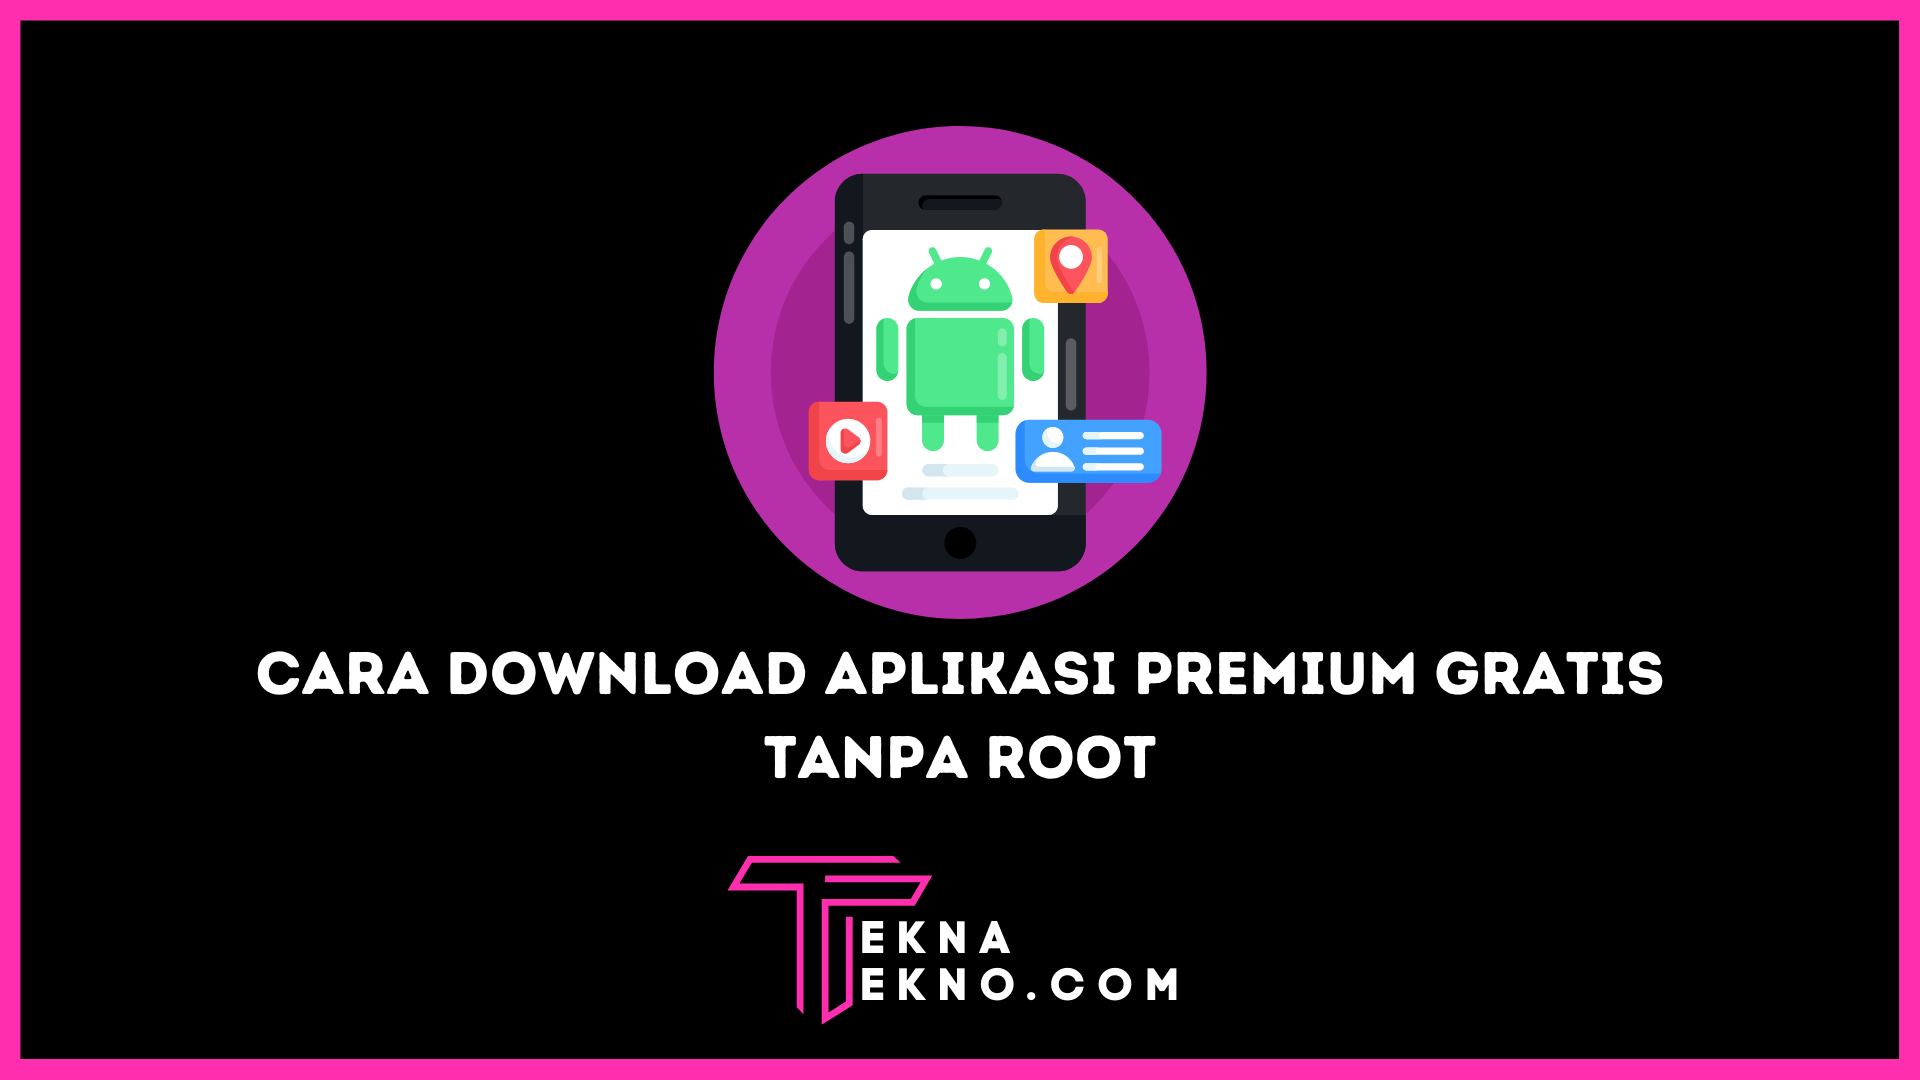 5 Cara Download Aplikasi Berbayar Jadi Gratis di Android Tanpa Root